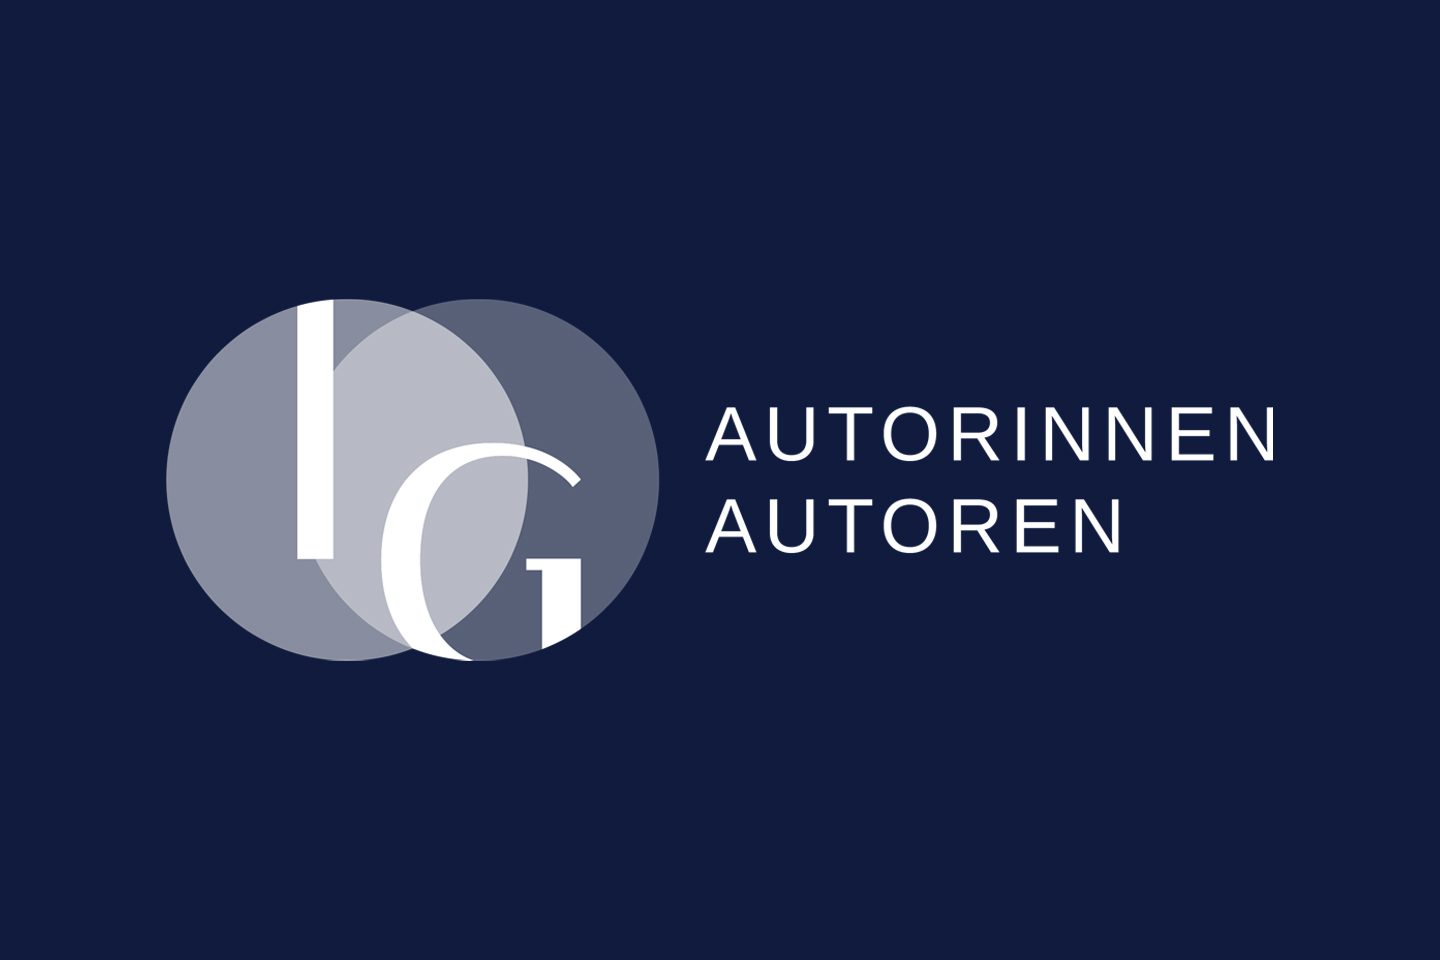 IG Autoren und Autorinnen Logo Design